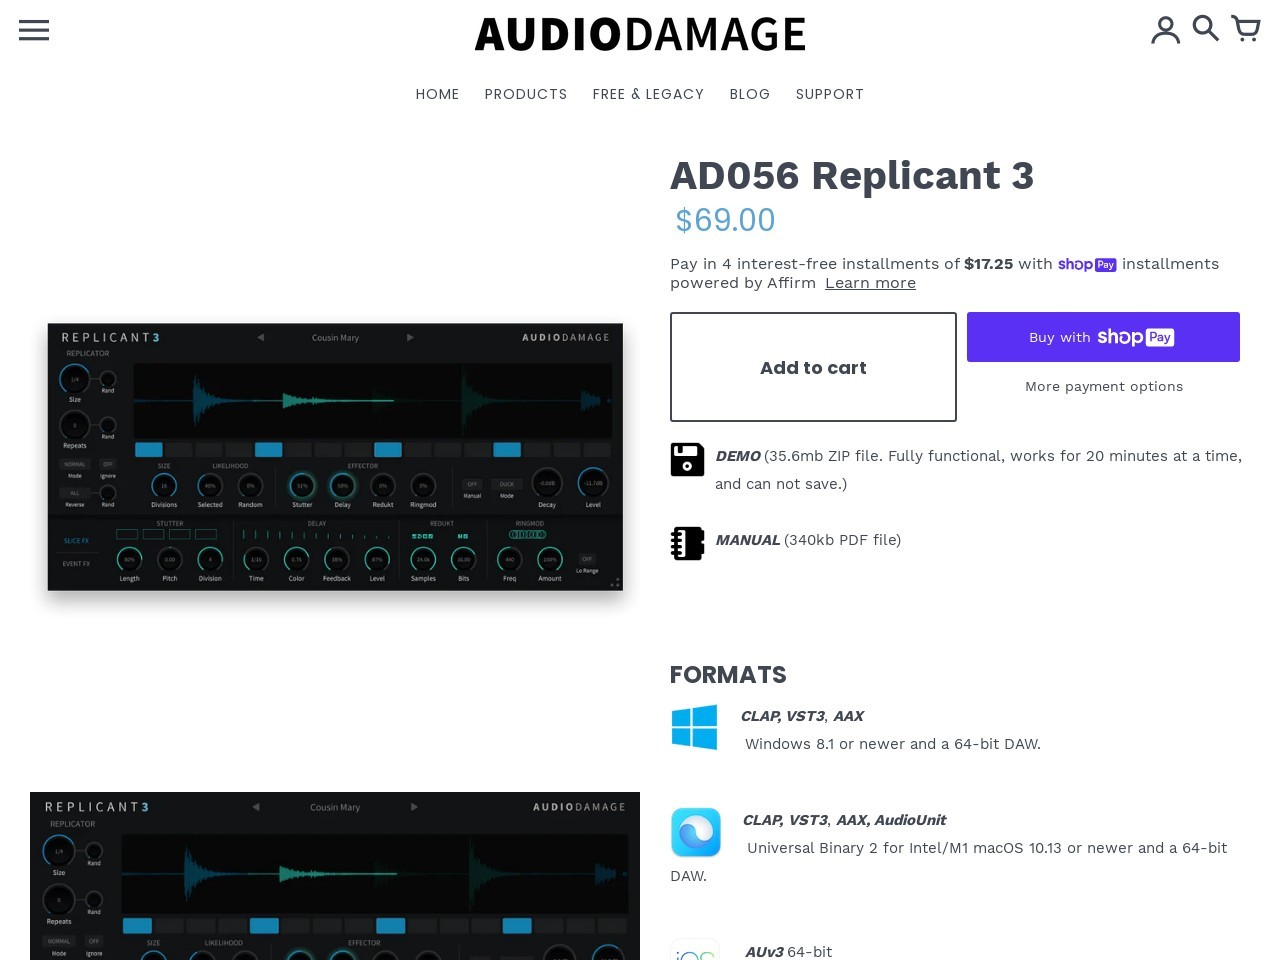 AD056 Replicant 3 – Audio Damage